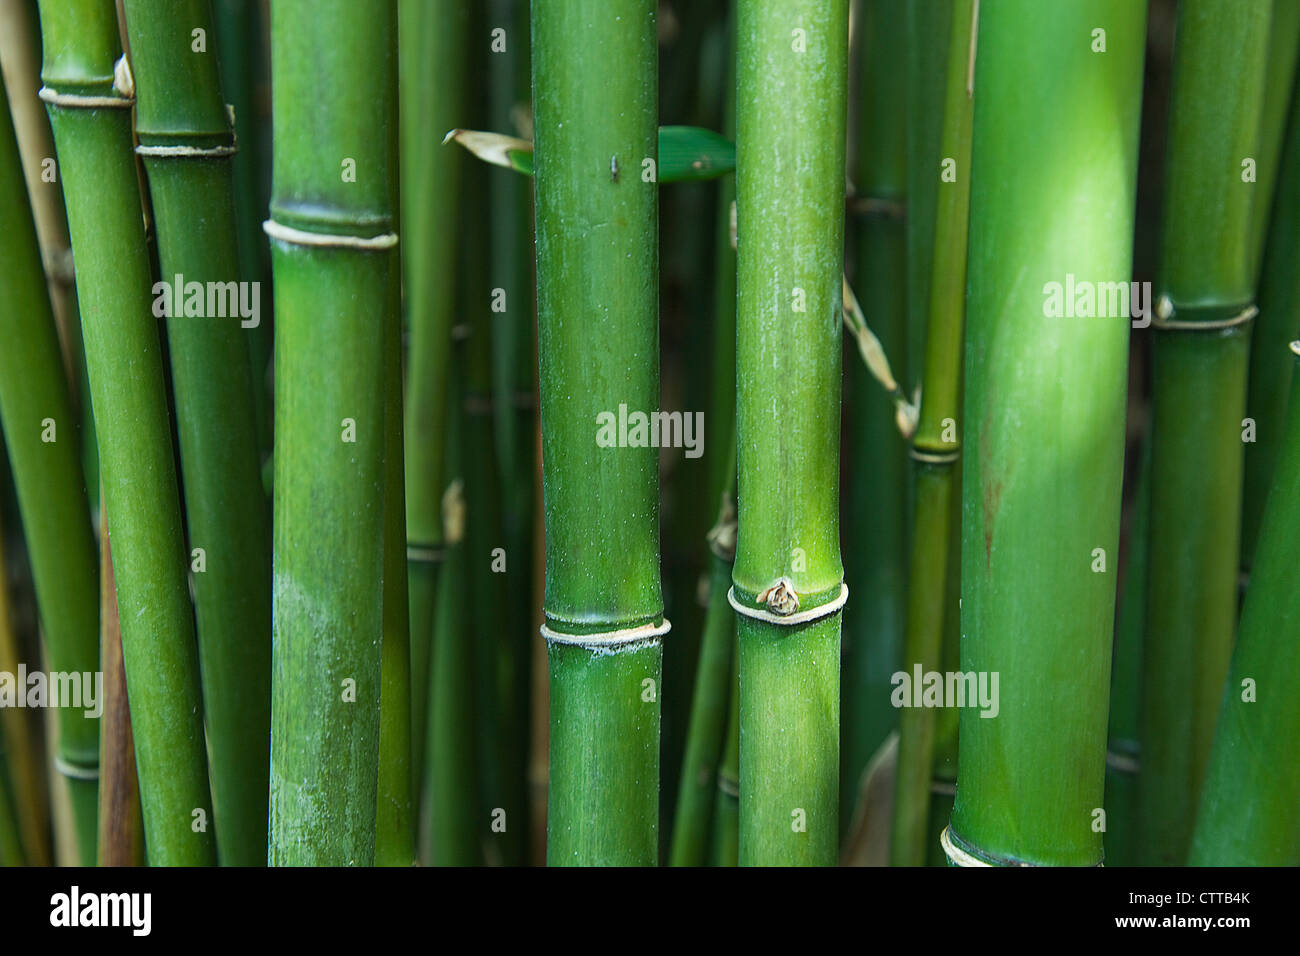 Semiarundinaria Fastuosa, Narihira bamboo, Green Stock Photo - Alamy